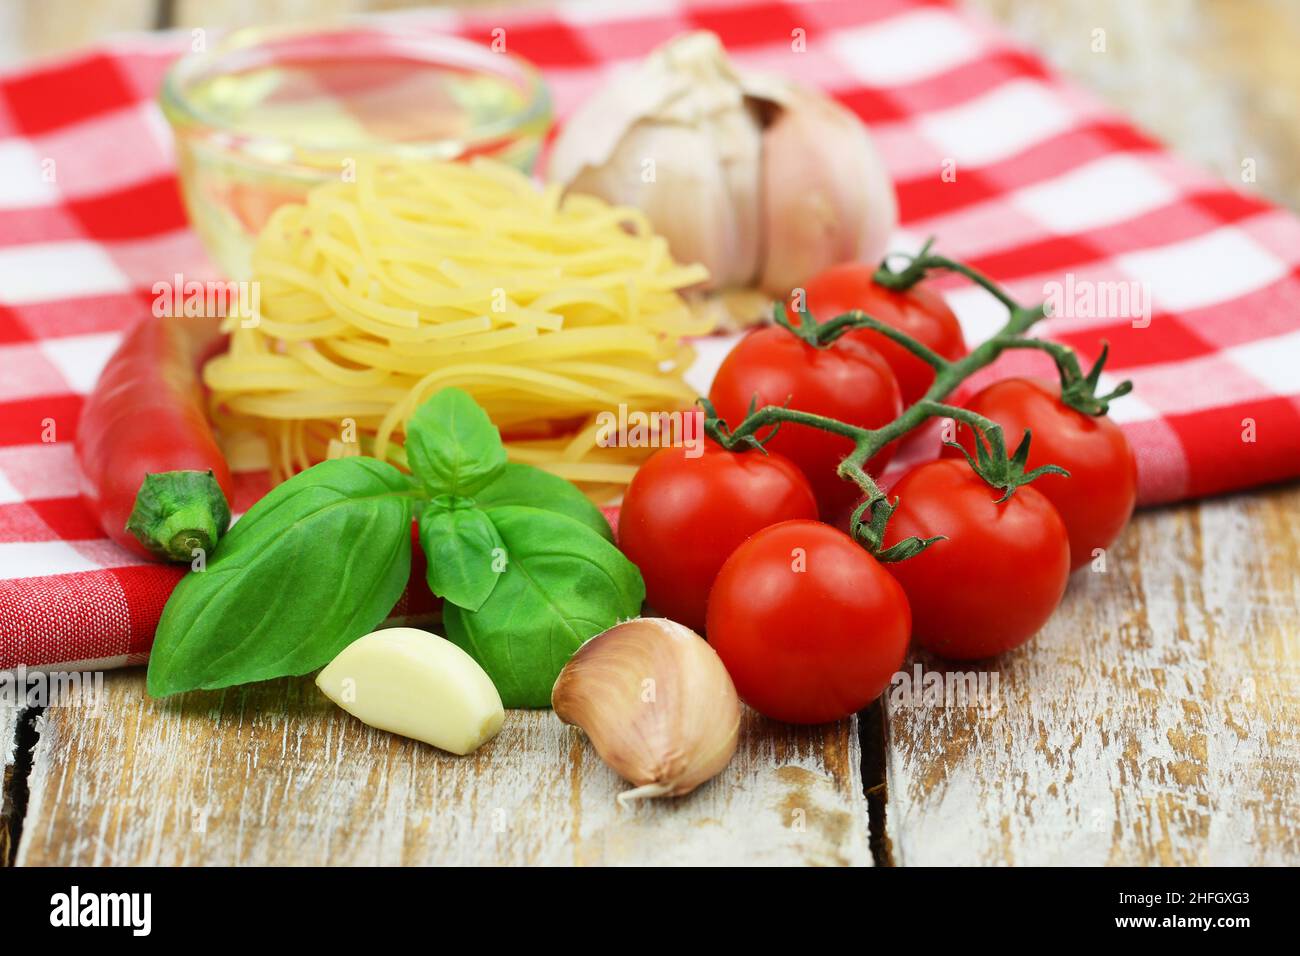 Ingredientes para cocinar pasta: Tagliatelle, tomates cherry, ajo, albahaca fresca, chile y un recipiente de aceite de oliva sobre un paño a cuadros Foto de stock